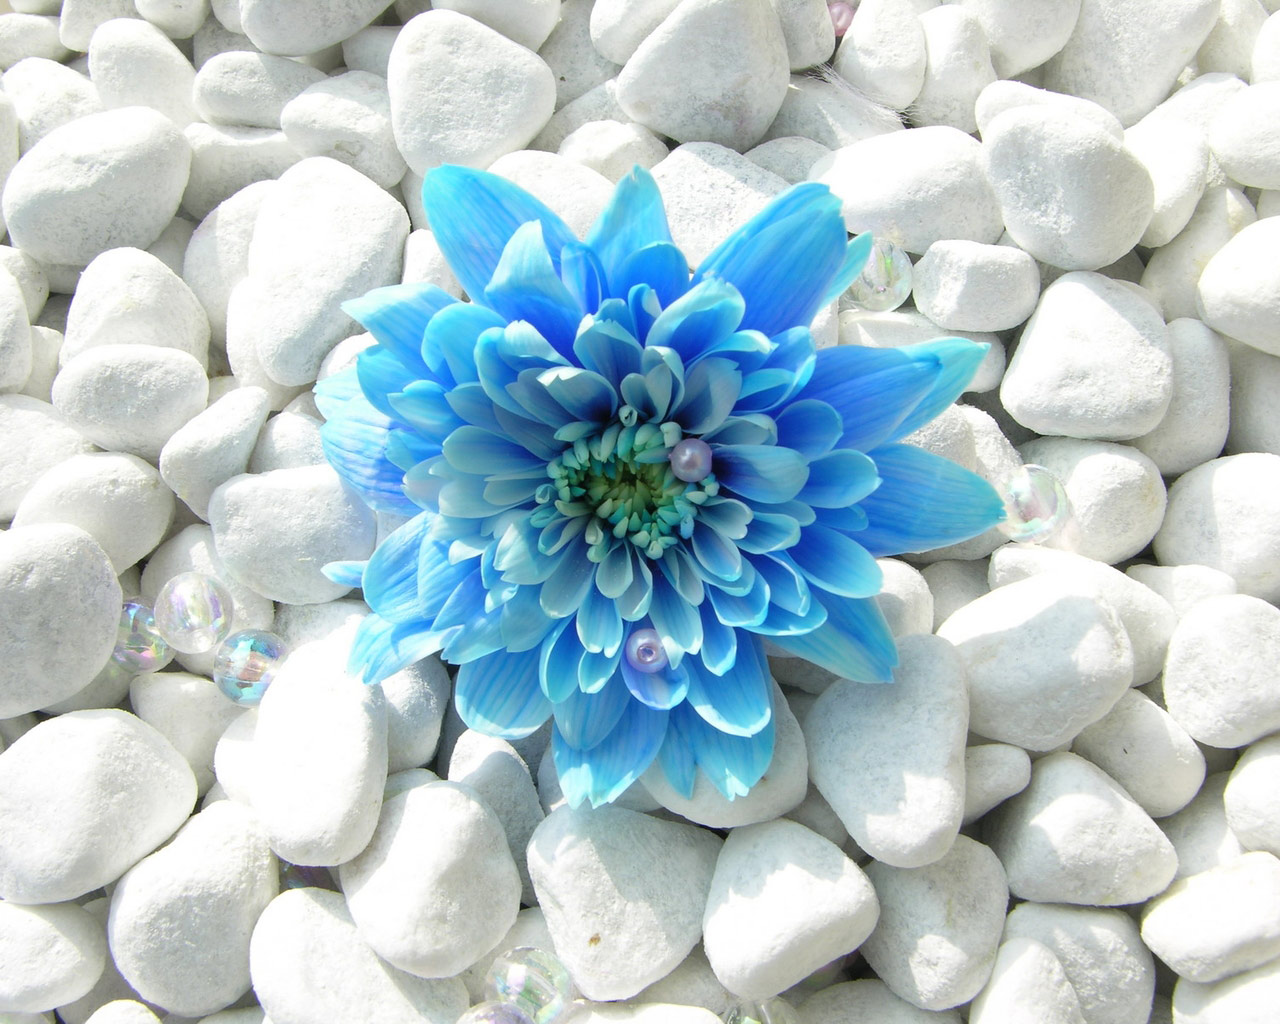 blue flowers cool wallpaper - HD Desktop Wallpapers | 4k HD